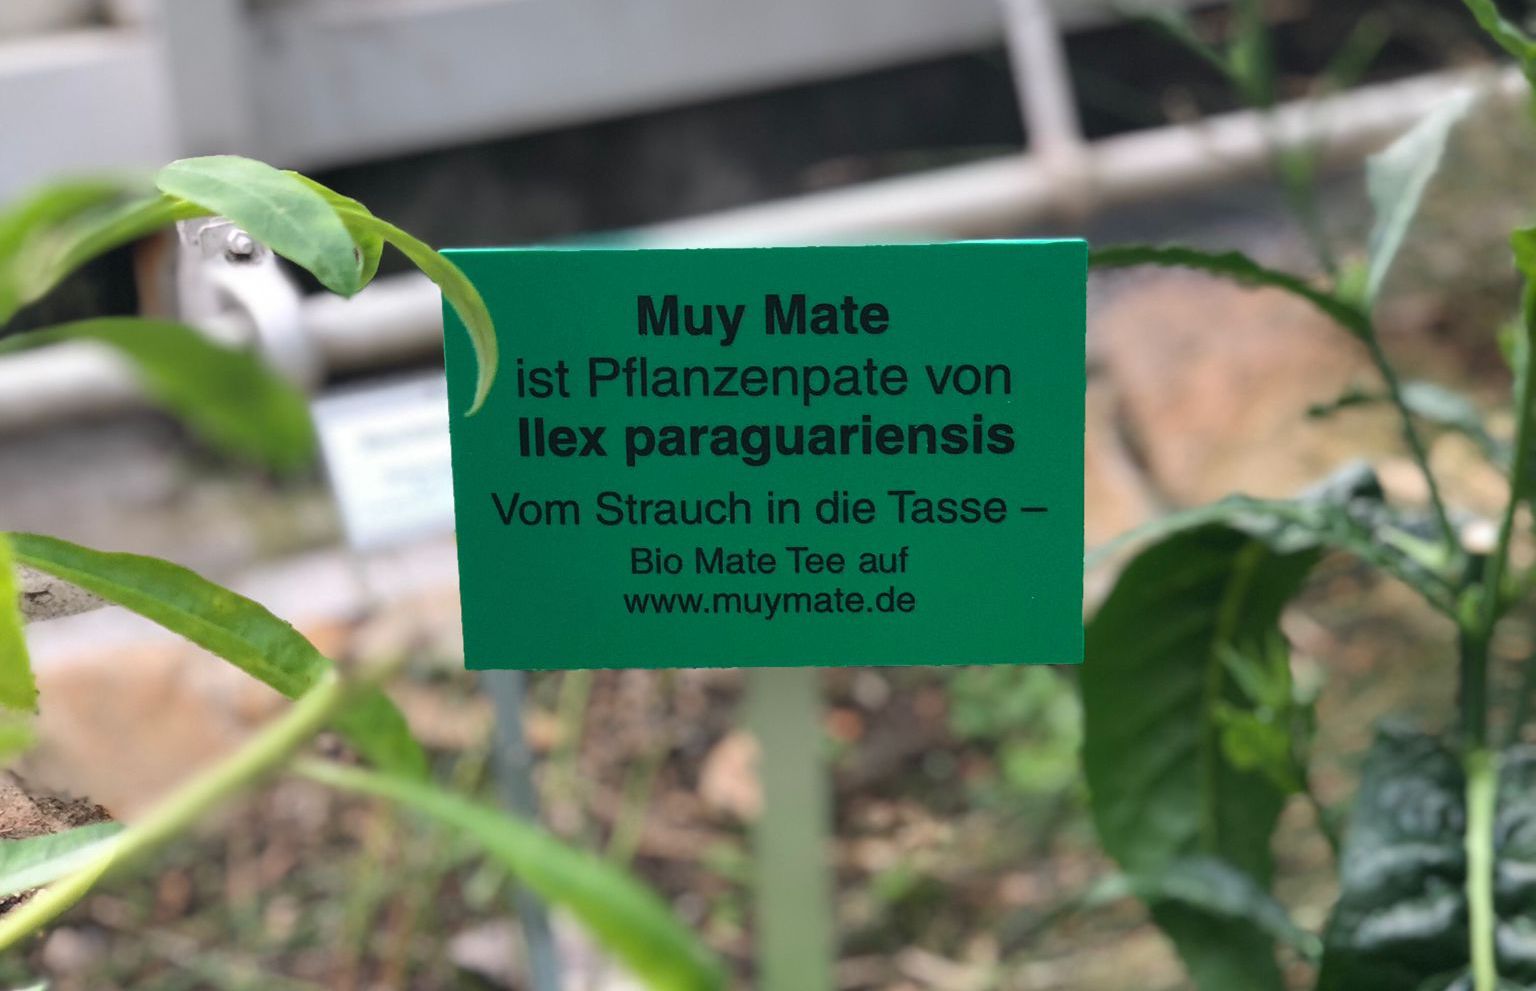 Mate Patenschaft Botanischer Garten Berlin 1 1